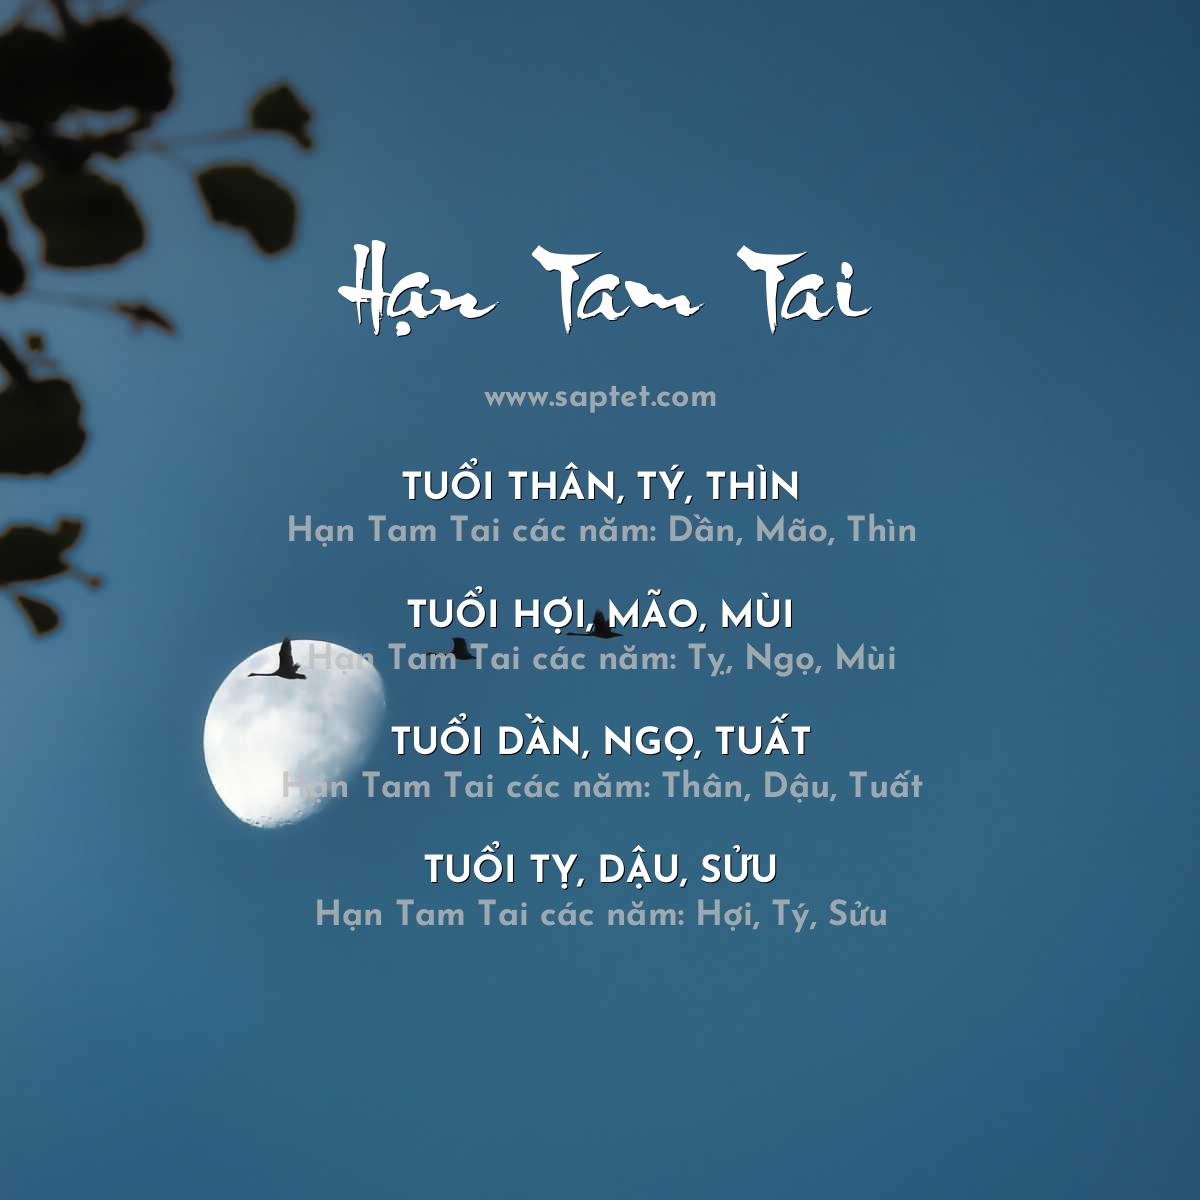 Năm hạn Tam Tai và cách tính tam tai